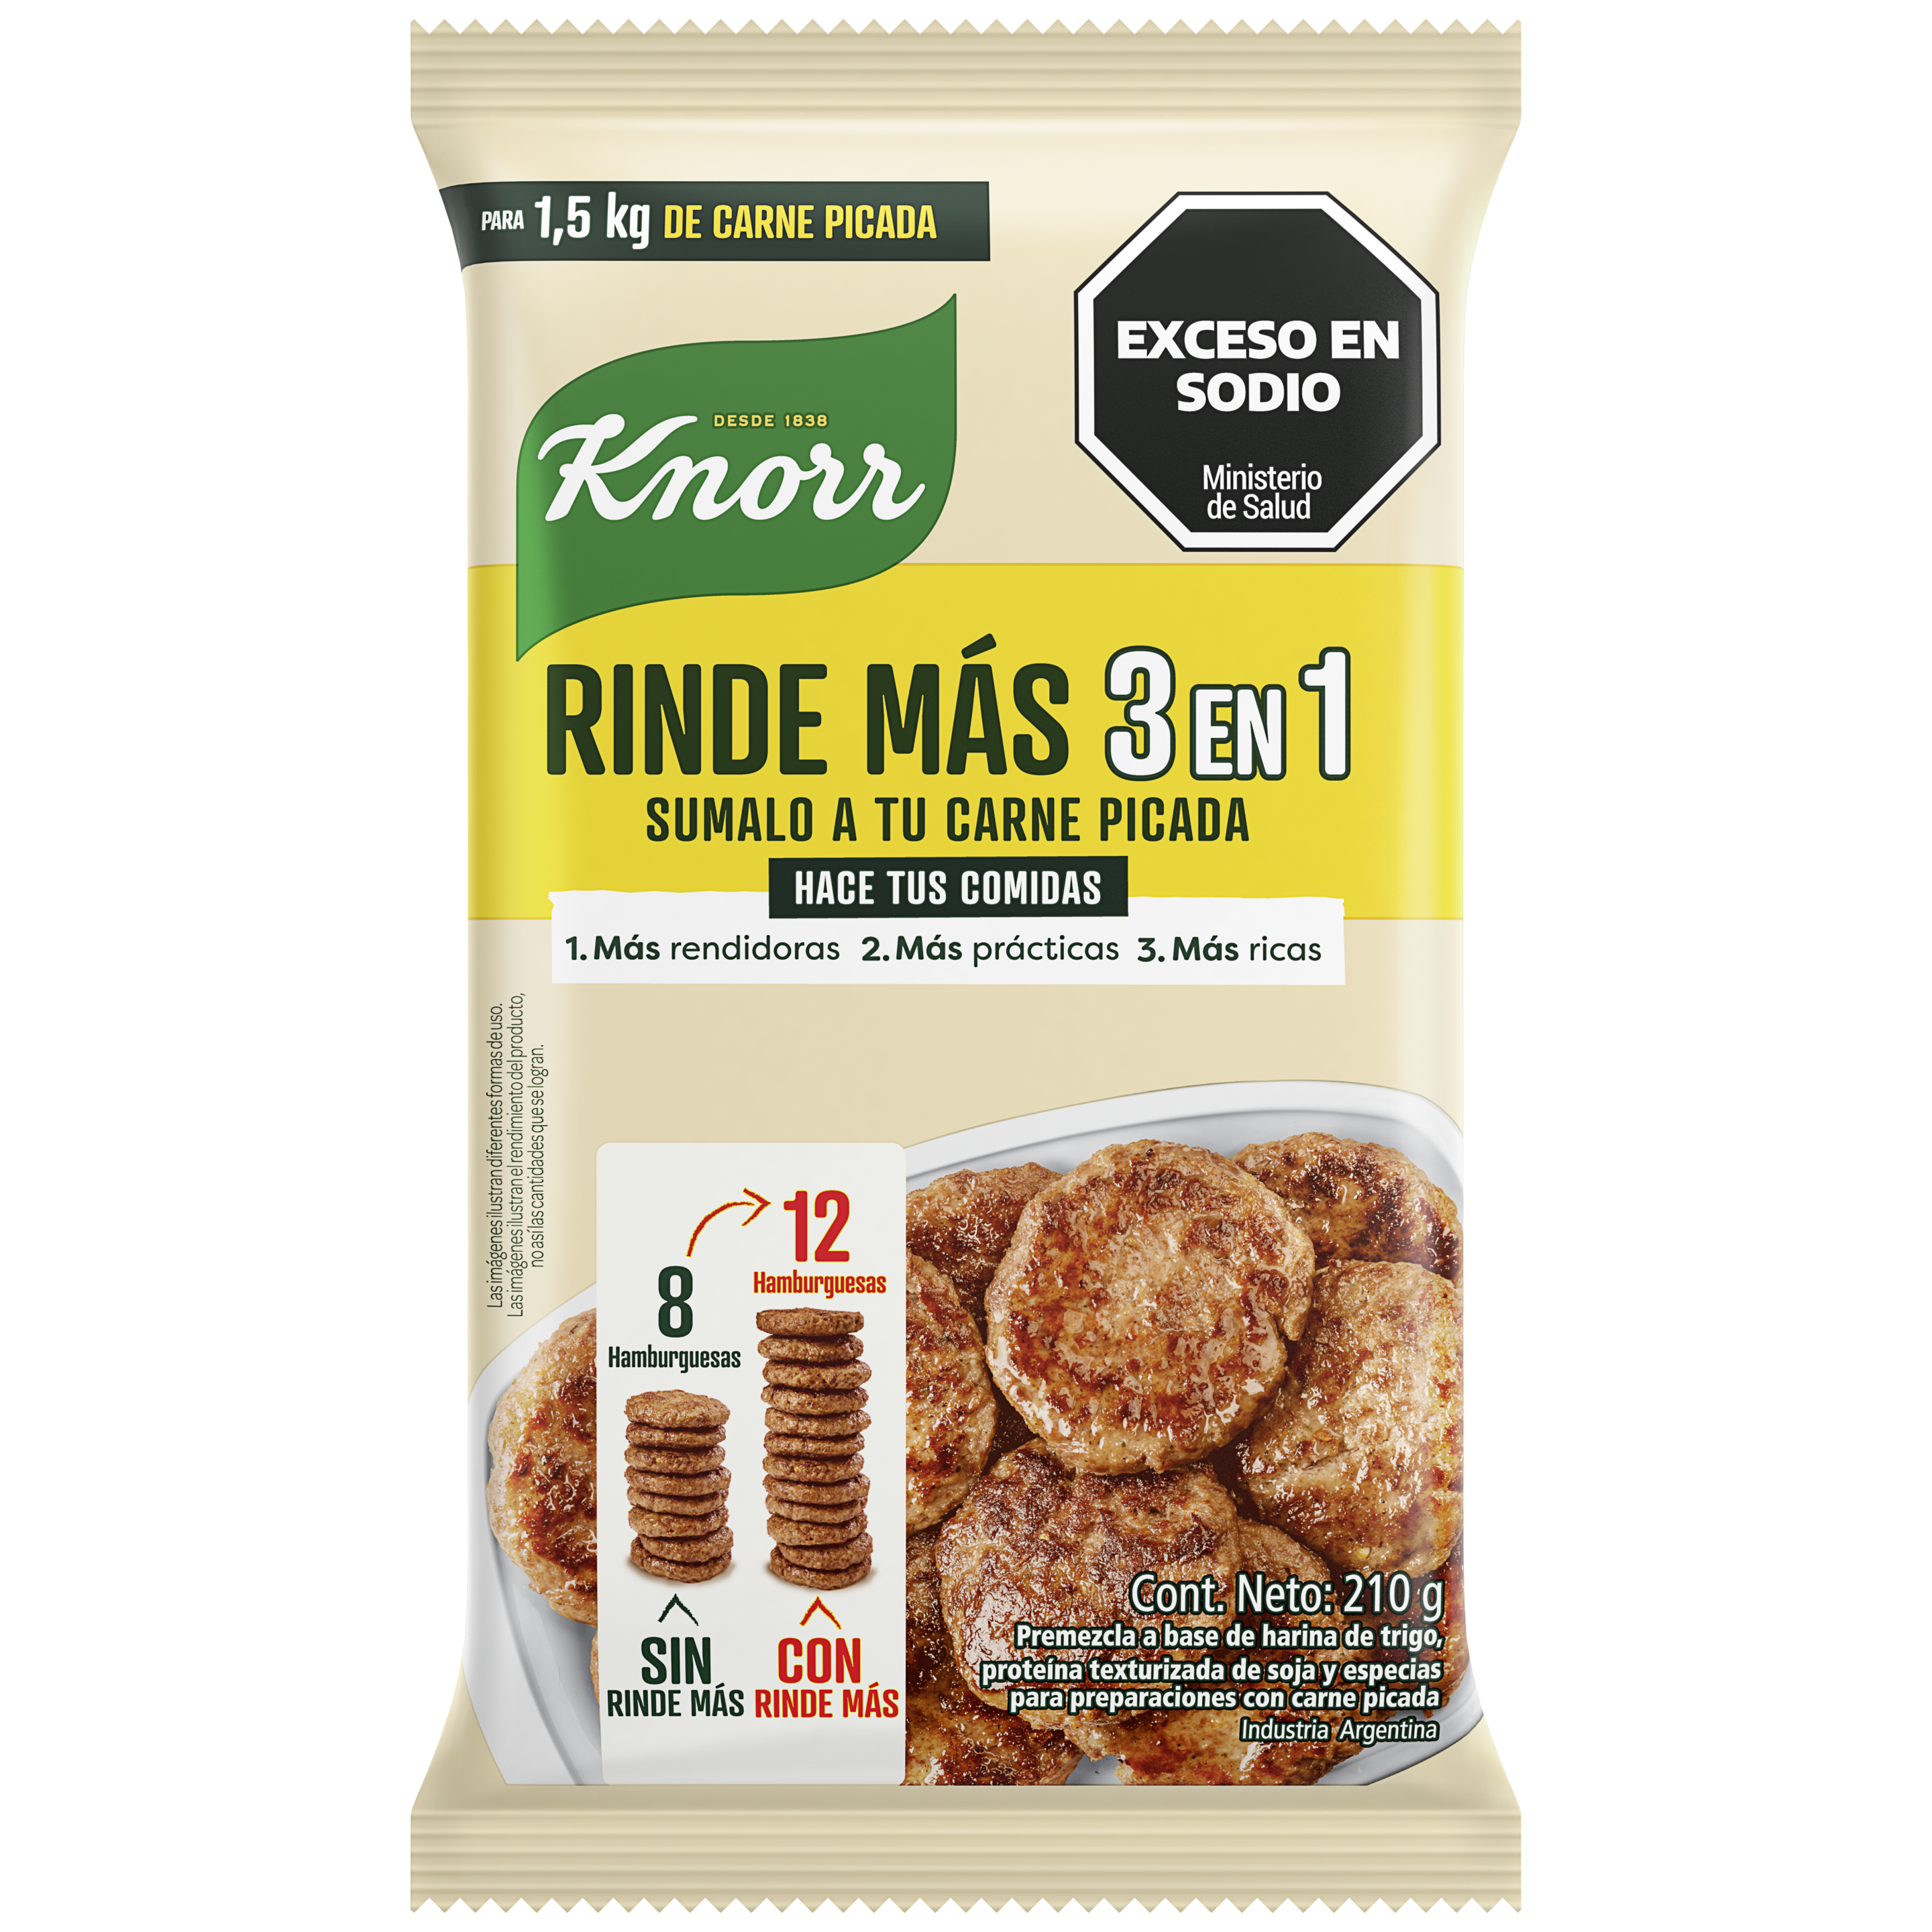 Imagen de envase Rinde Más 3 en 1 x210g Knorr